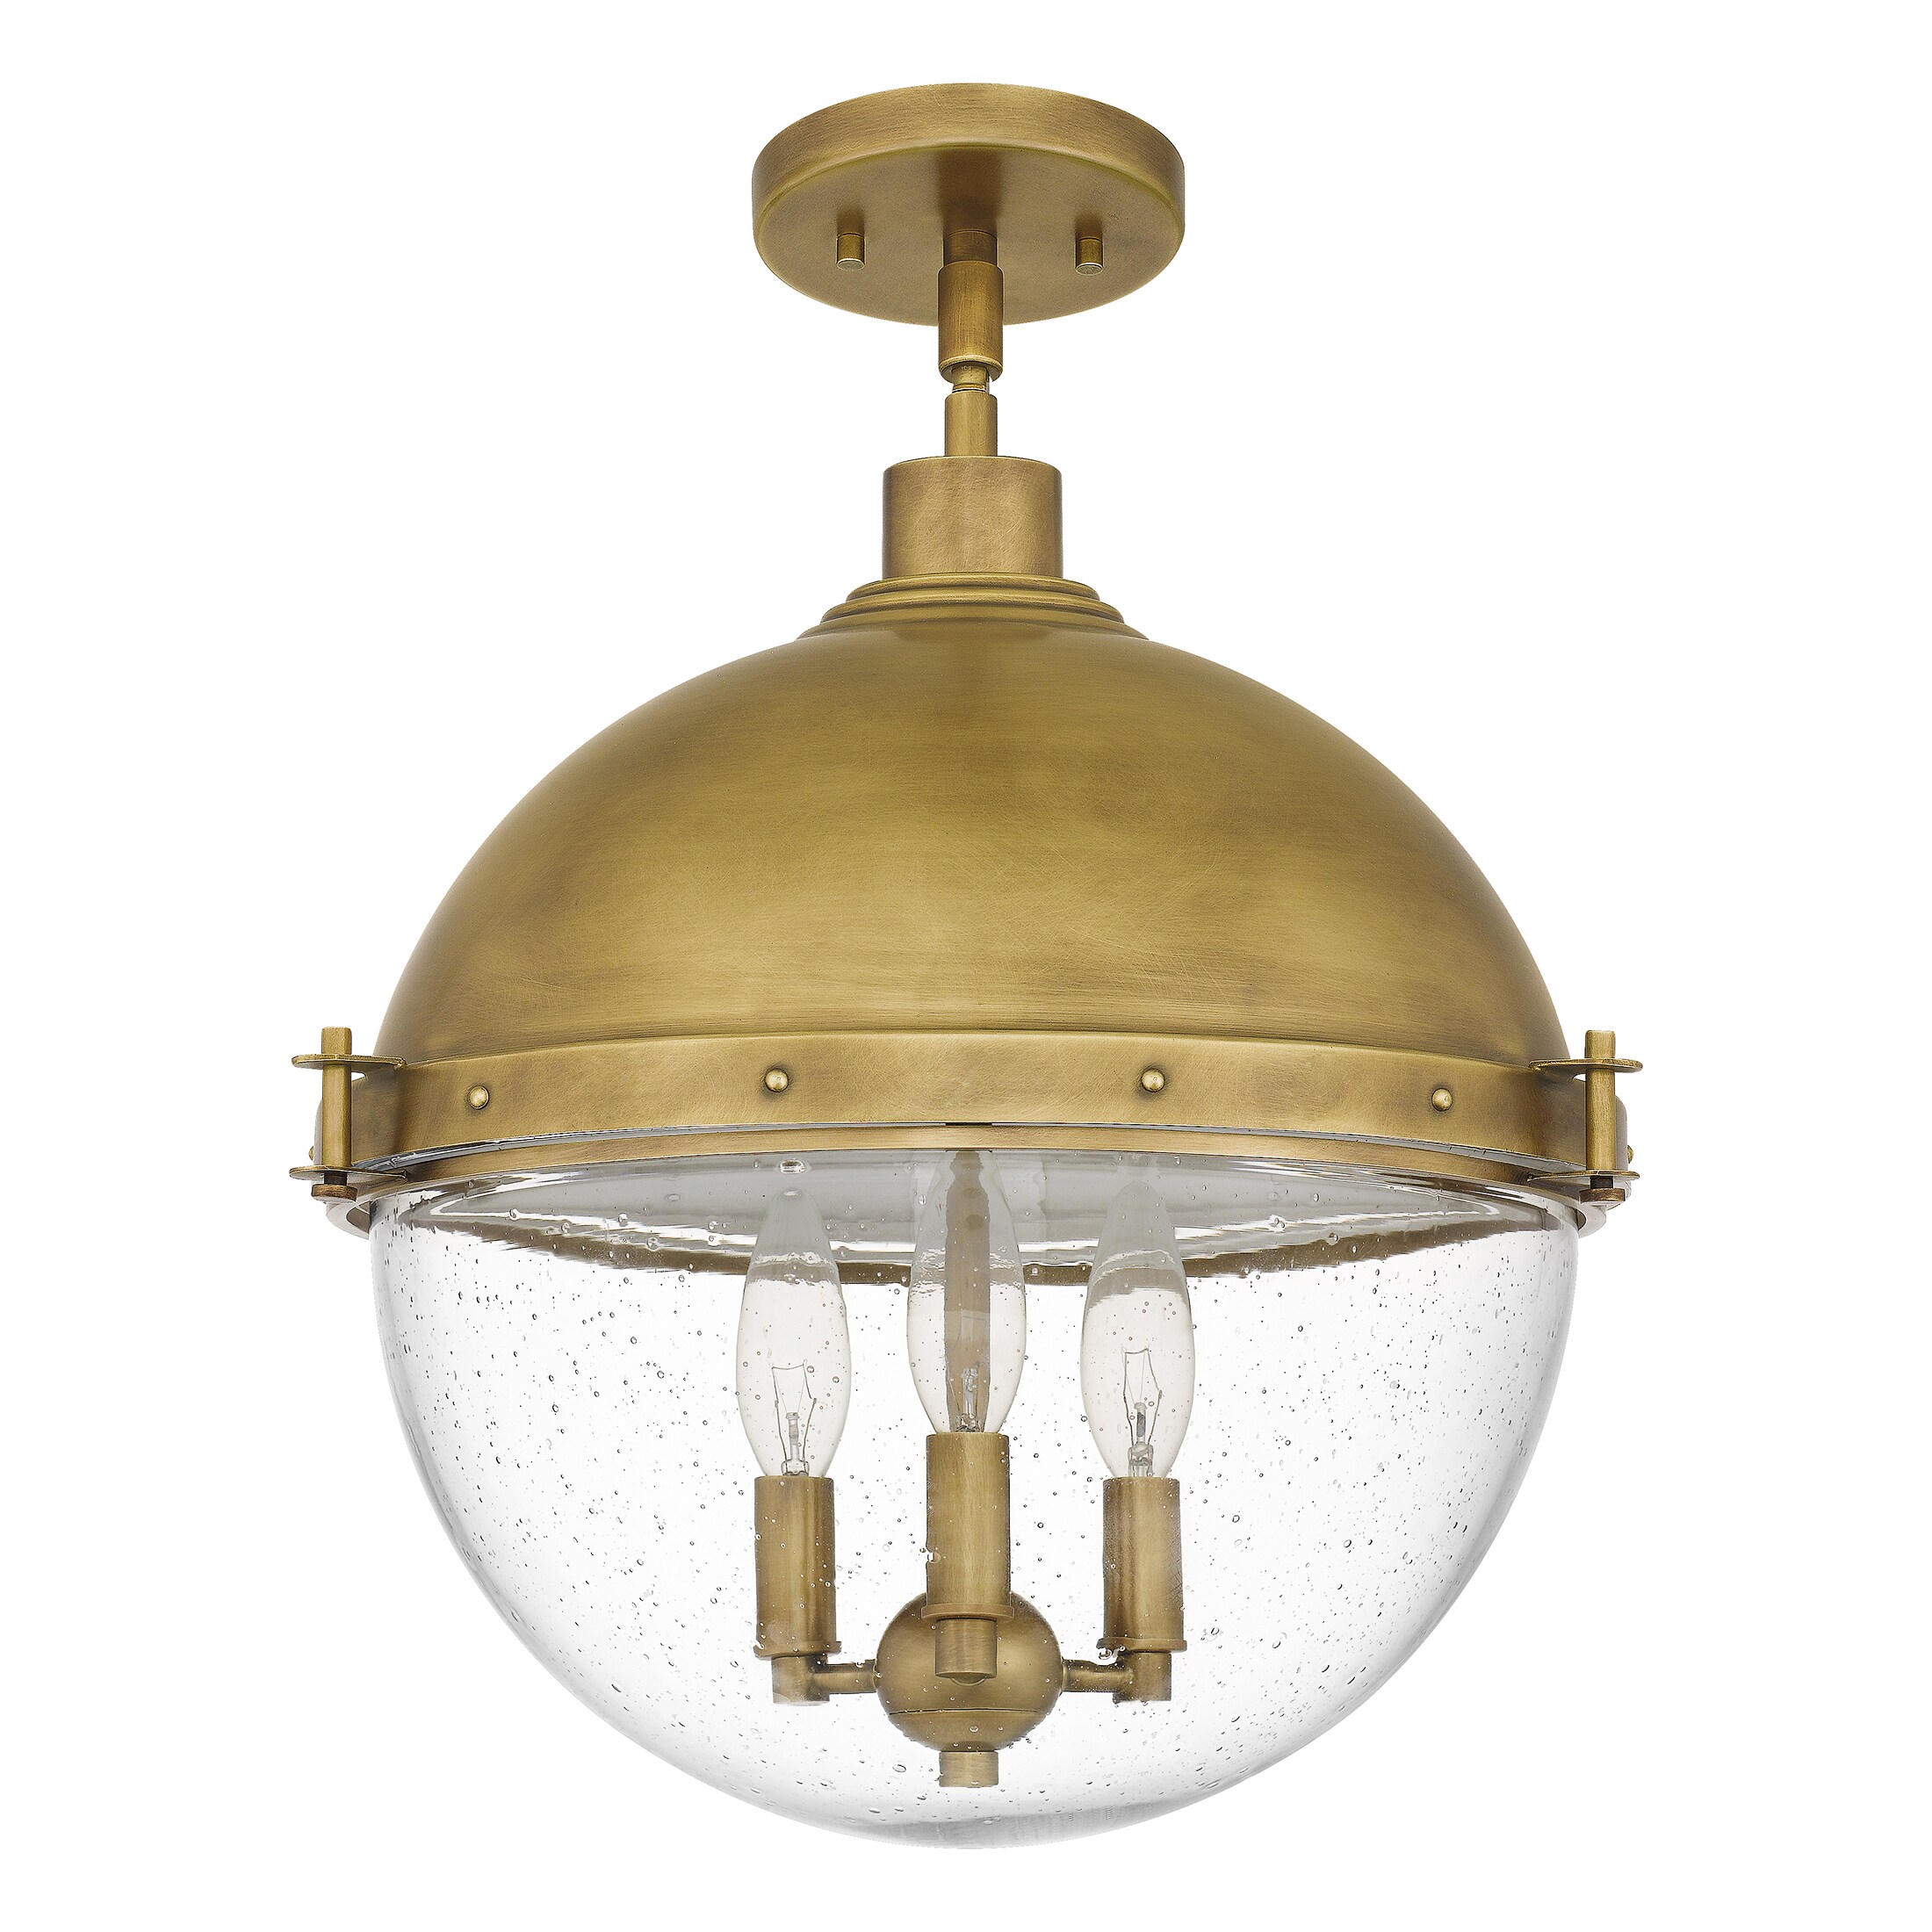 New Decorative Cast Brass Light Fixture Chain Paladian Design 22" Lengths 